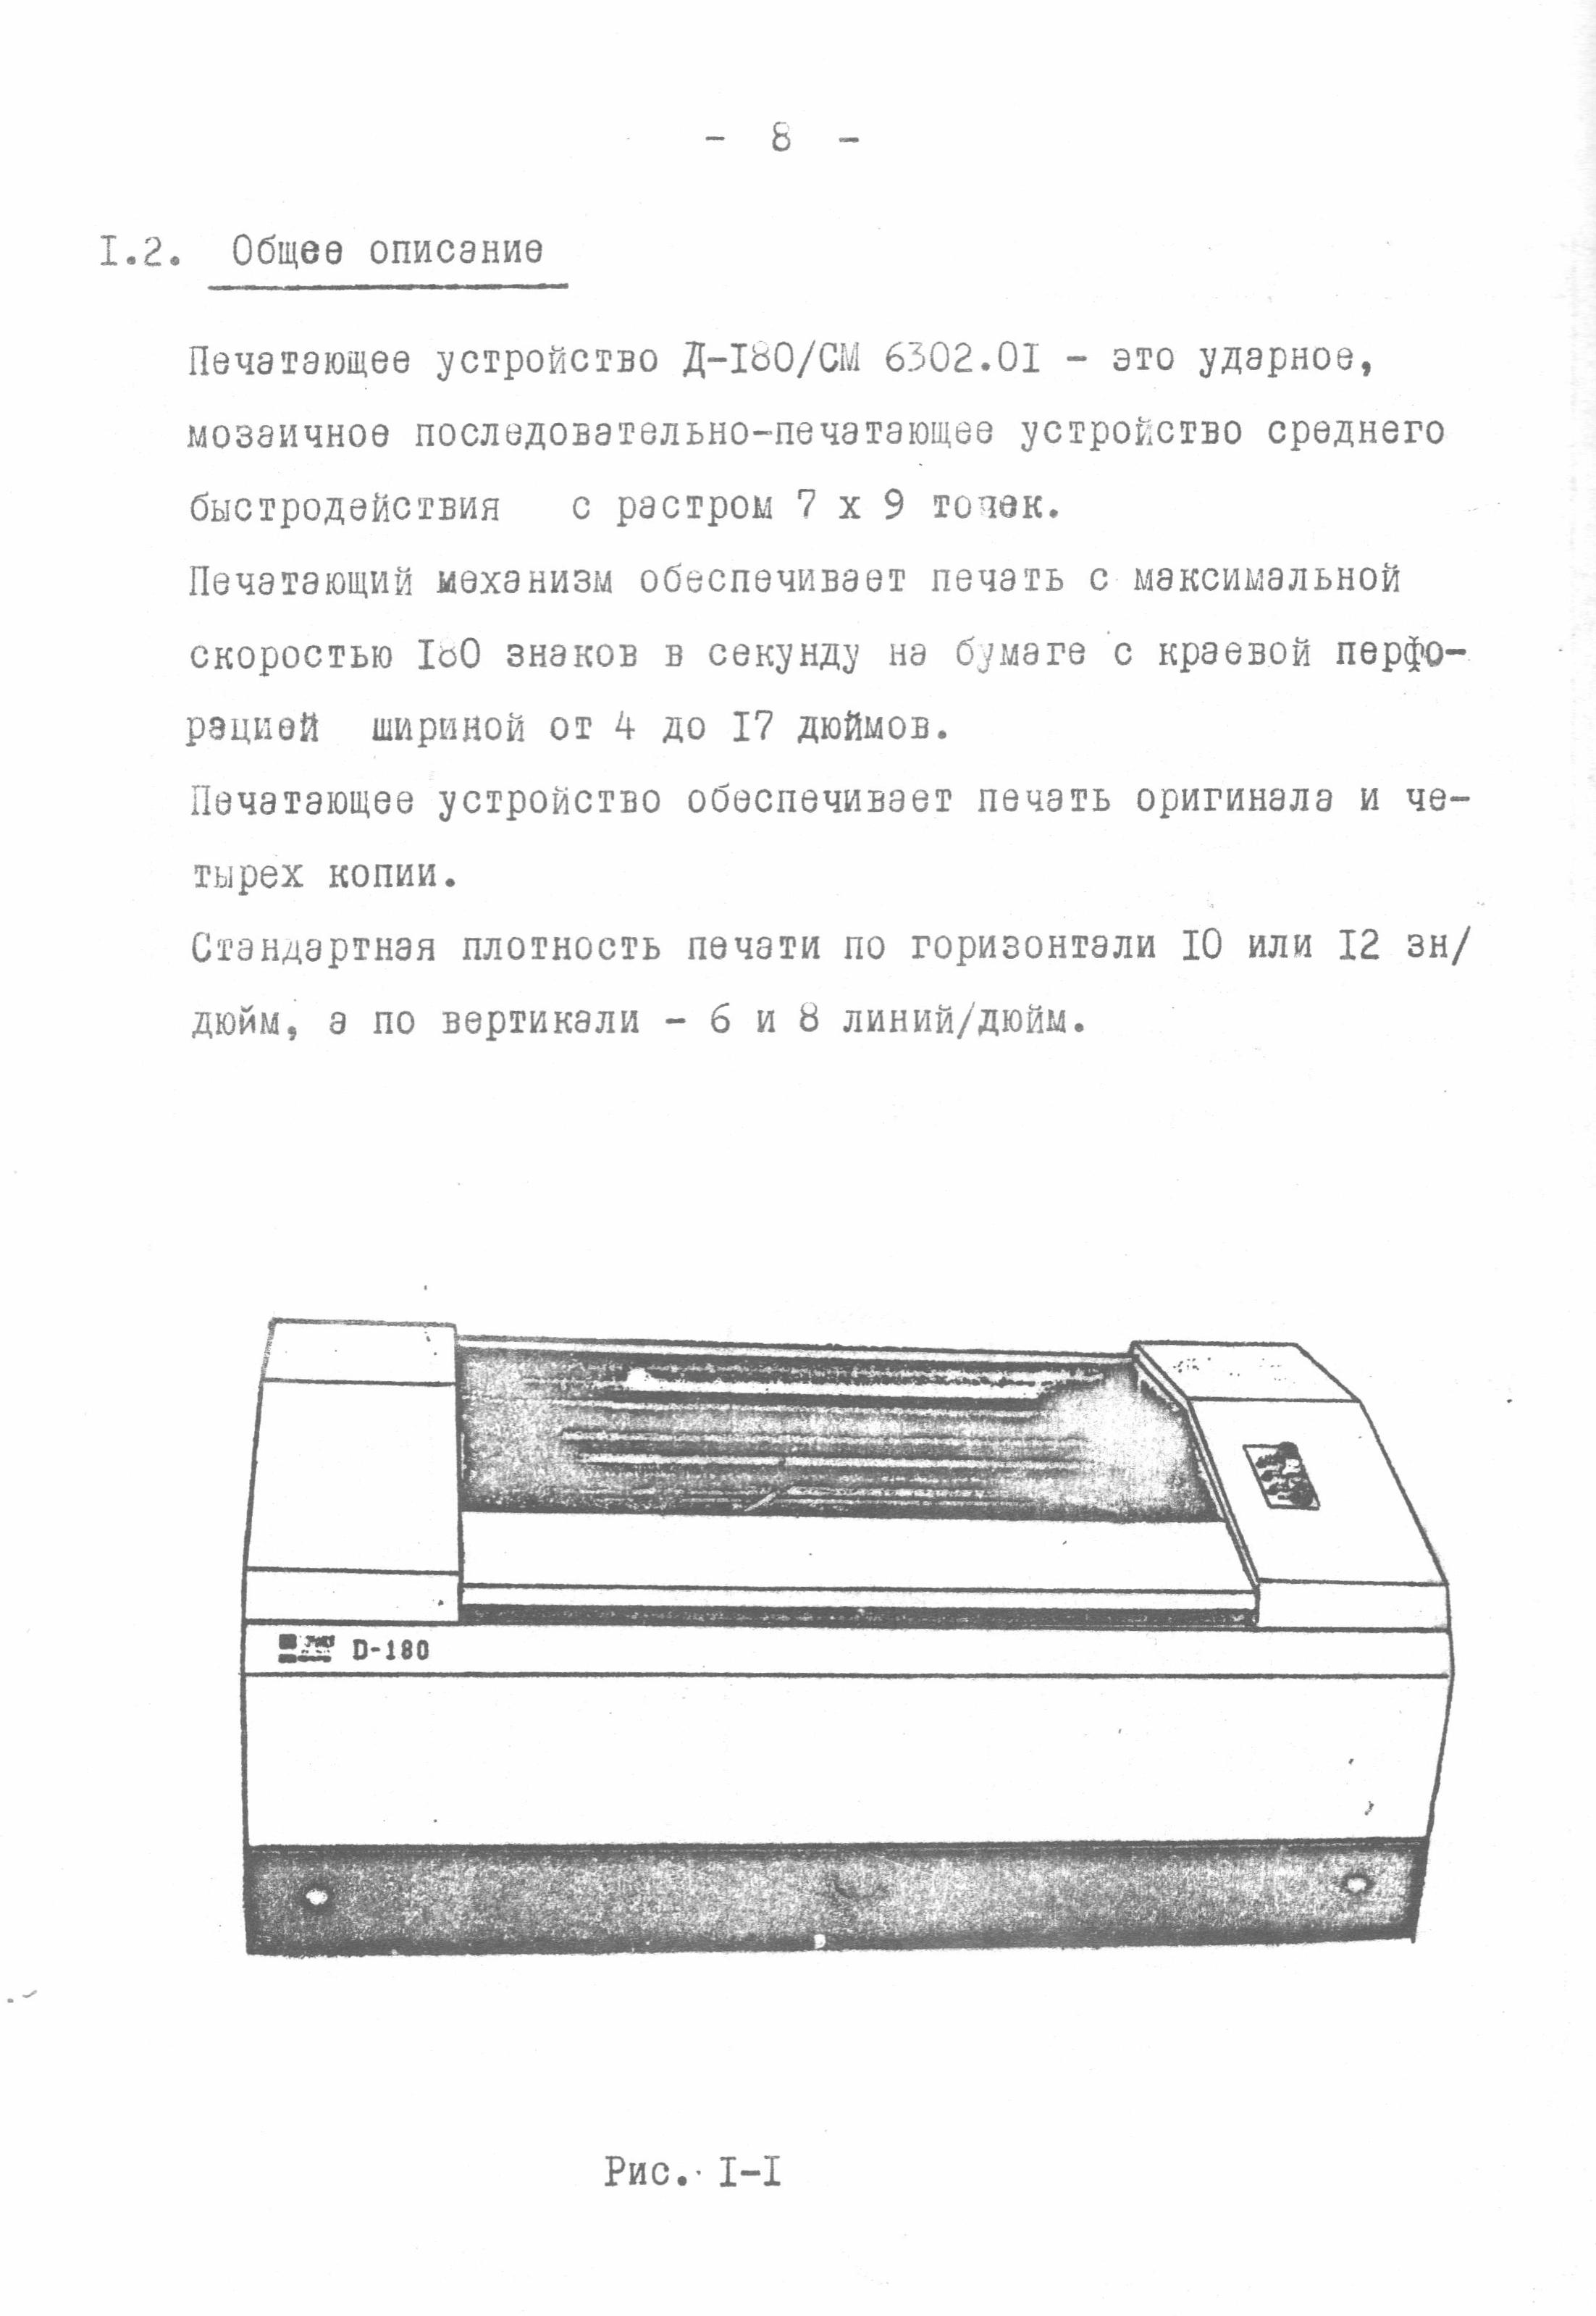 Последовательно-печатающее мозаичное устройство Д-180